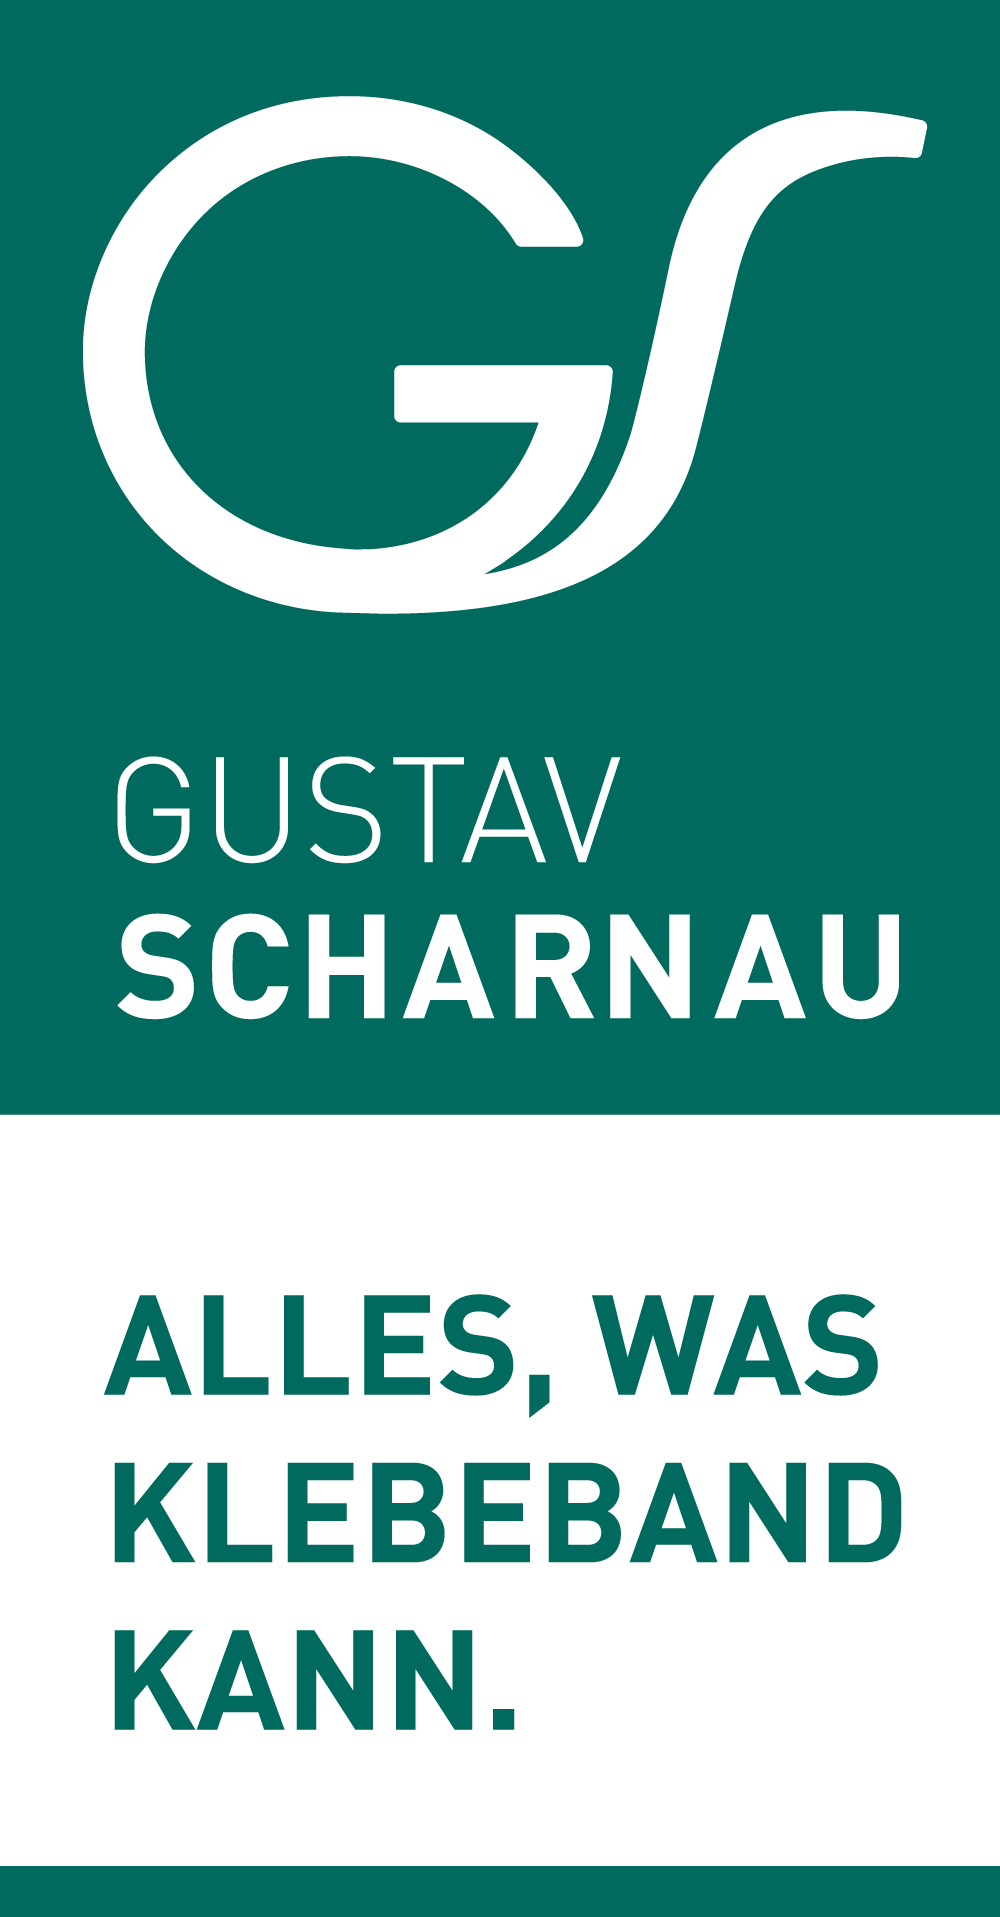 Partner: Gustav Scharnau - Alles, was Klebeband kann.